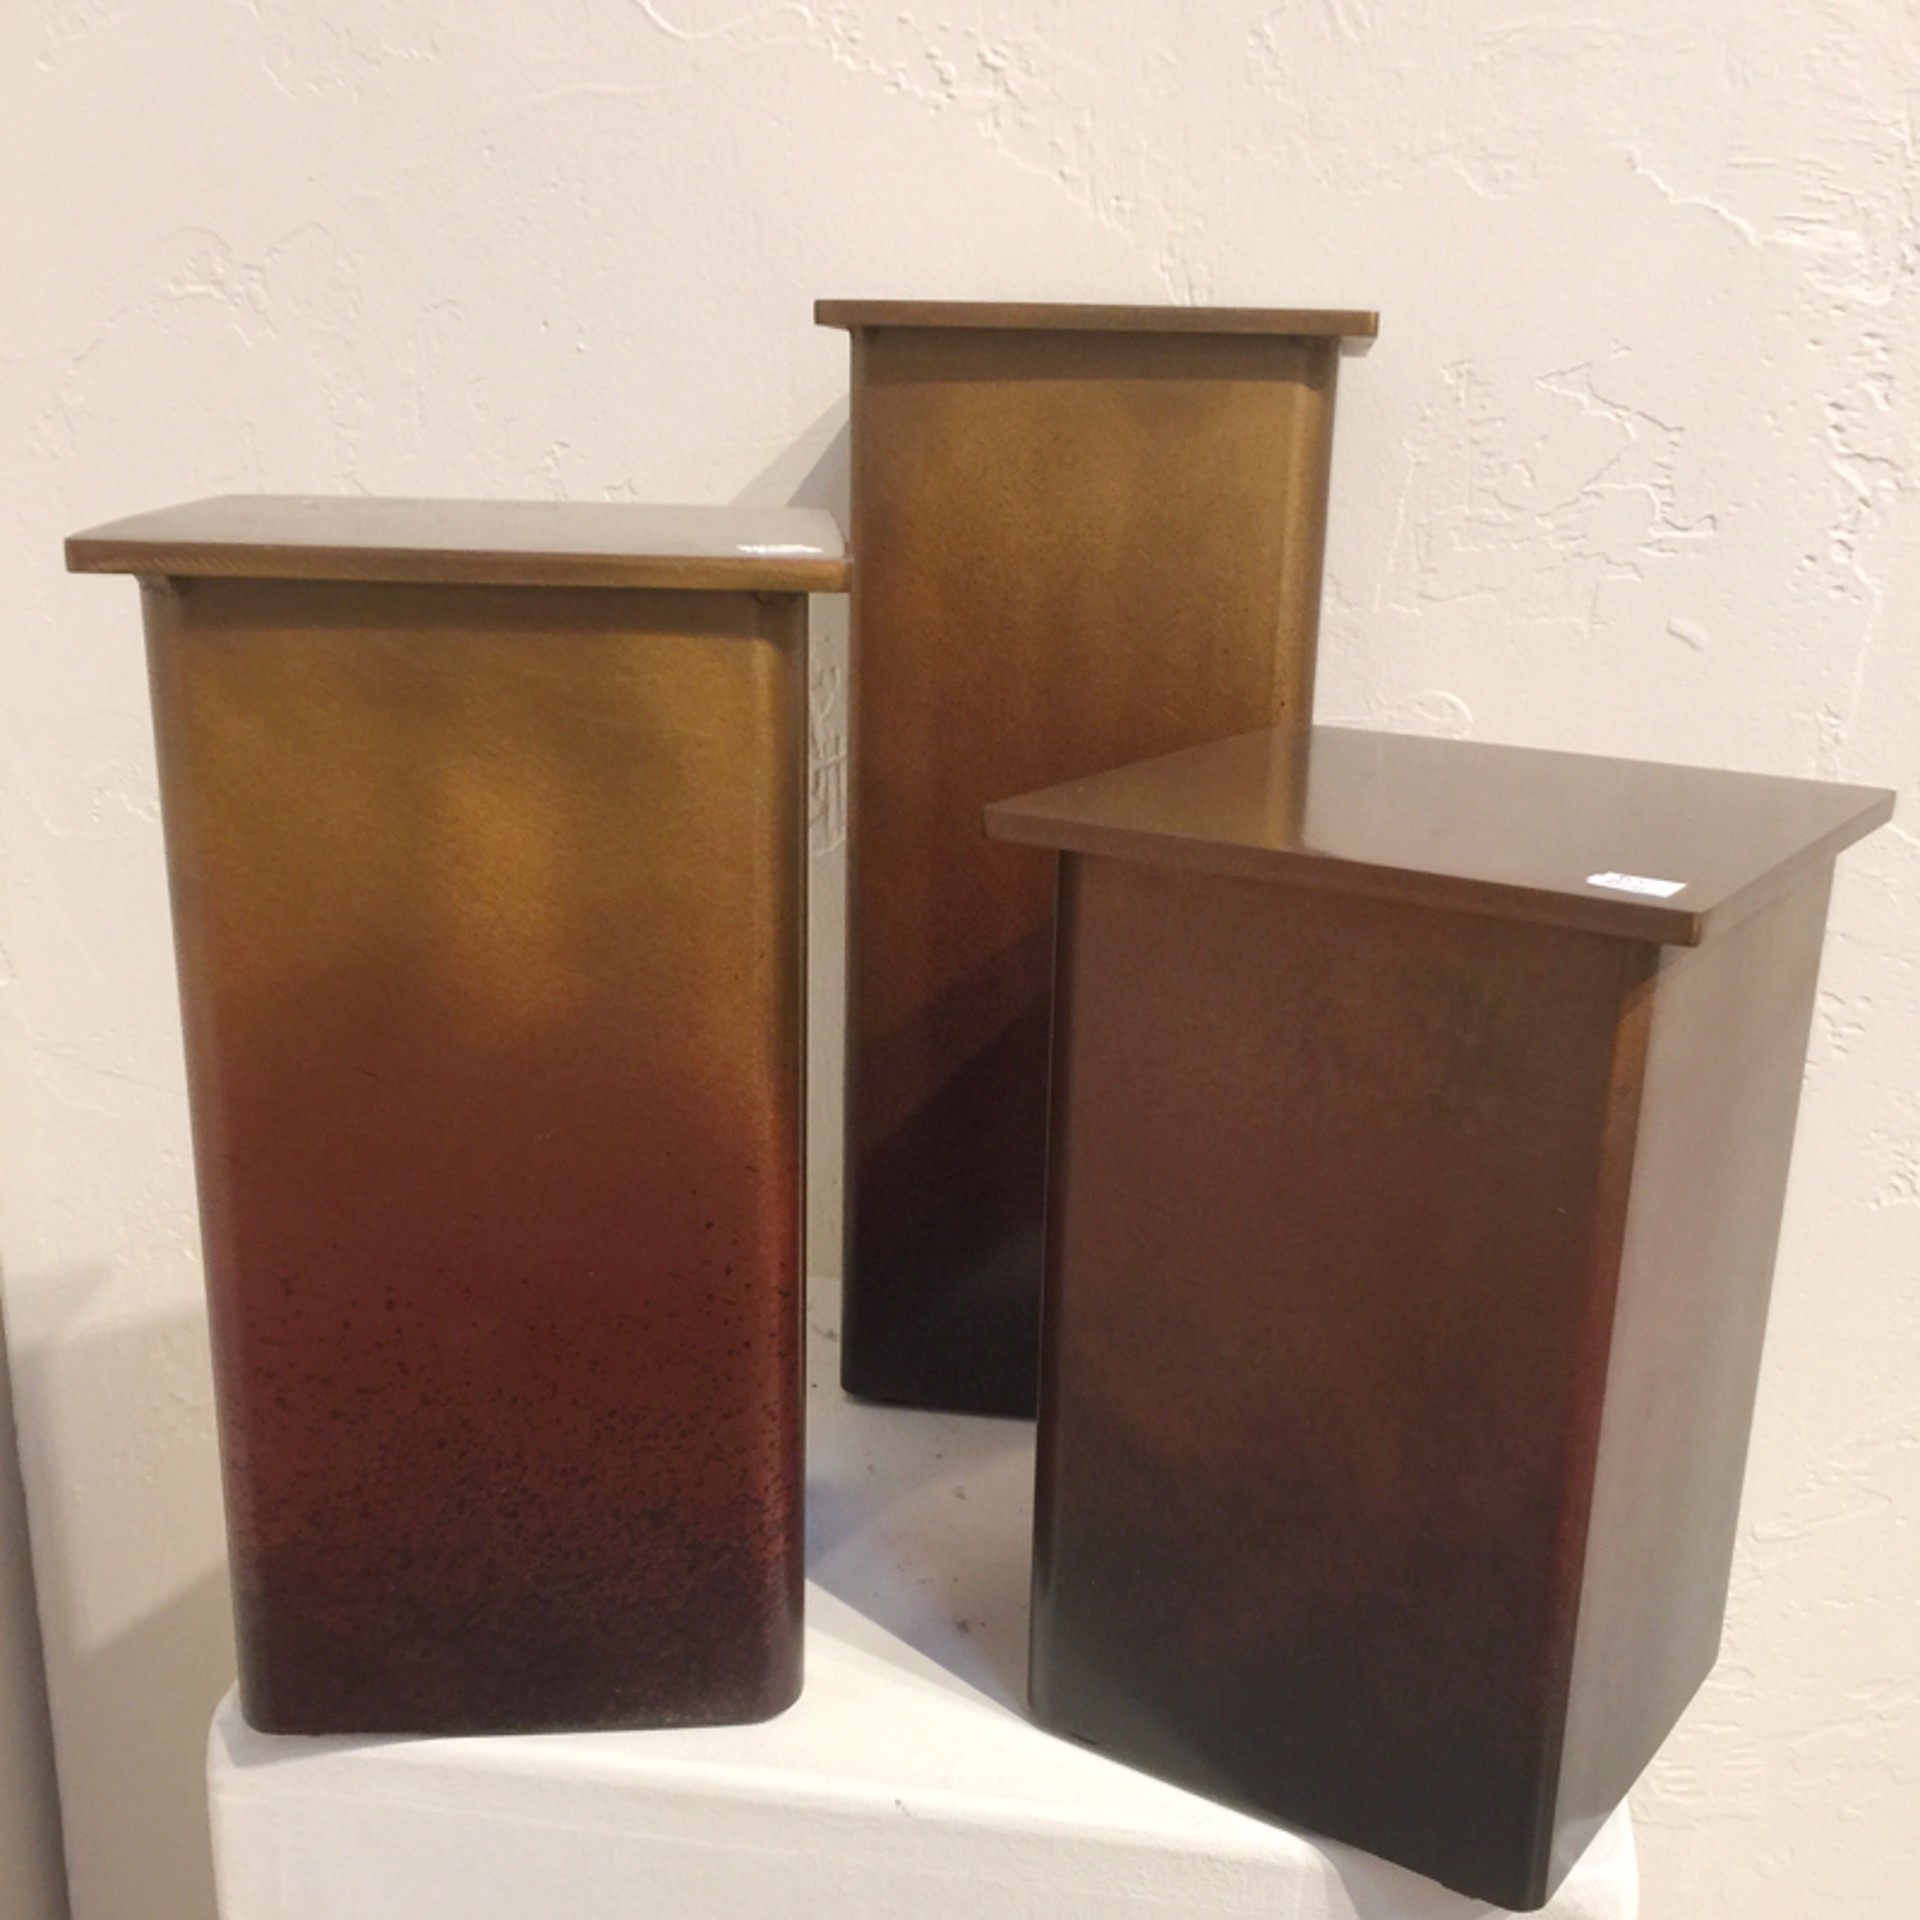 Pedestal - 8.5" - Patined Steel by Jill Shwaiko